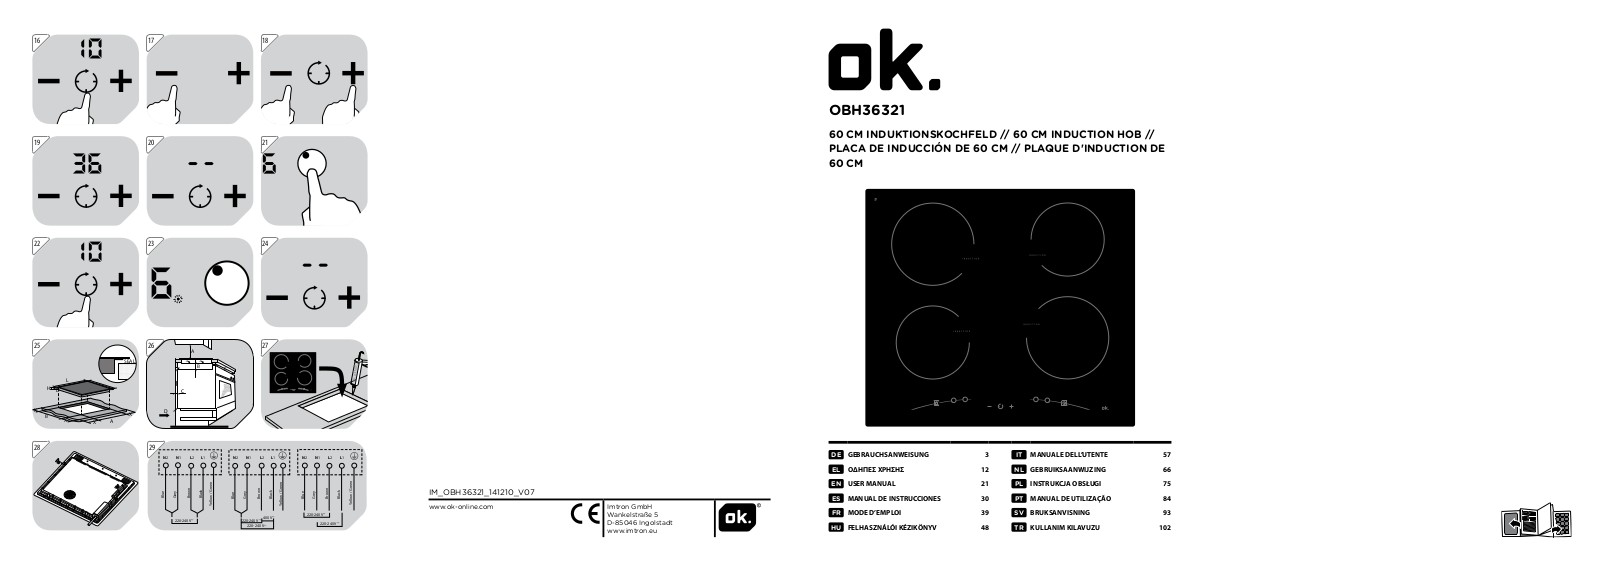 OK OBH 36322 User Manual